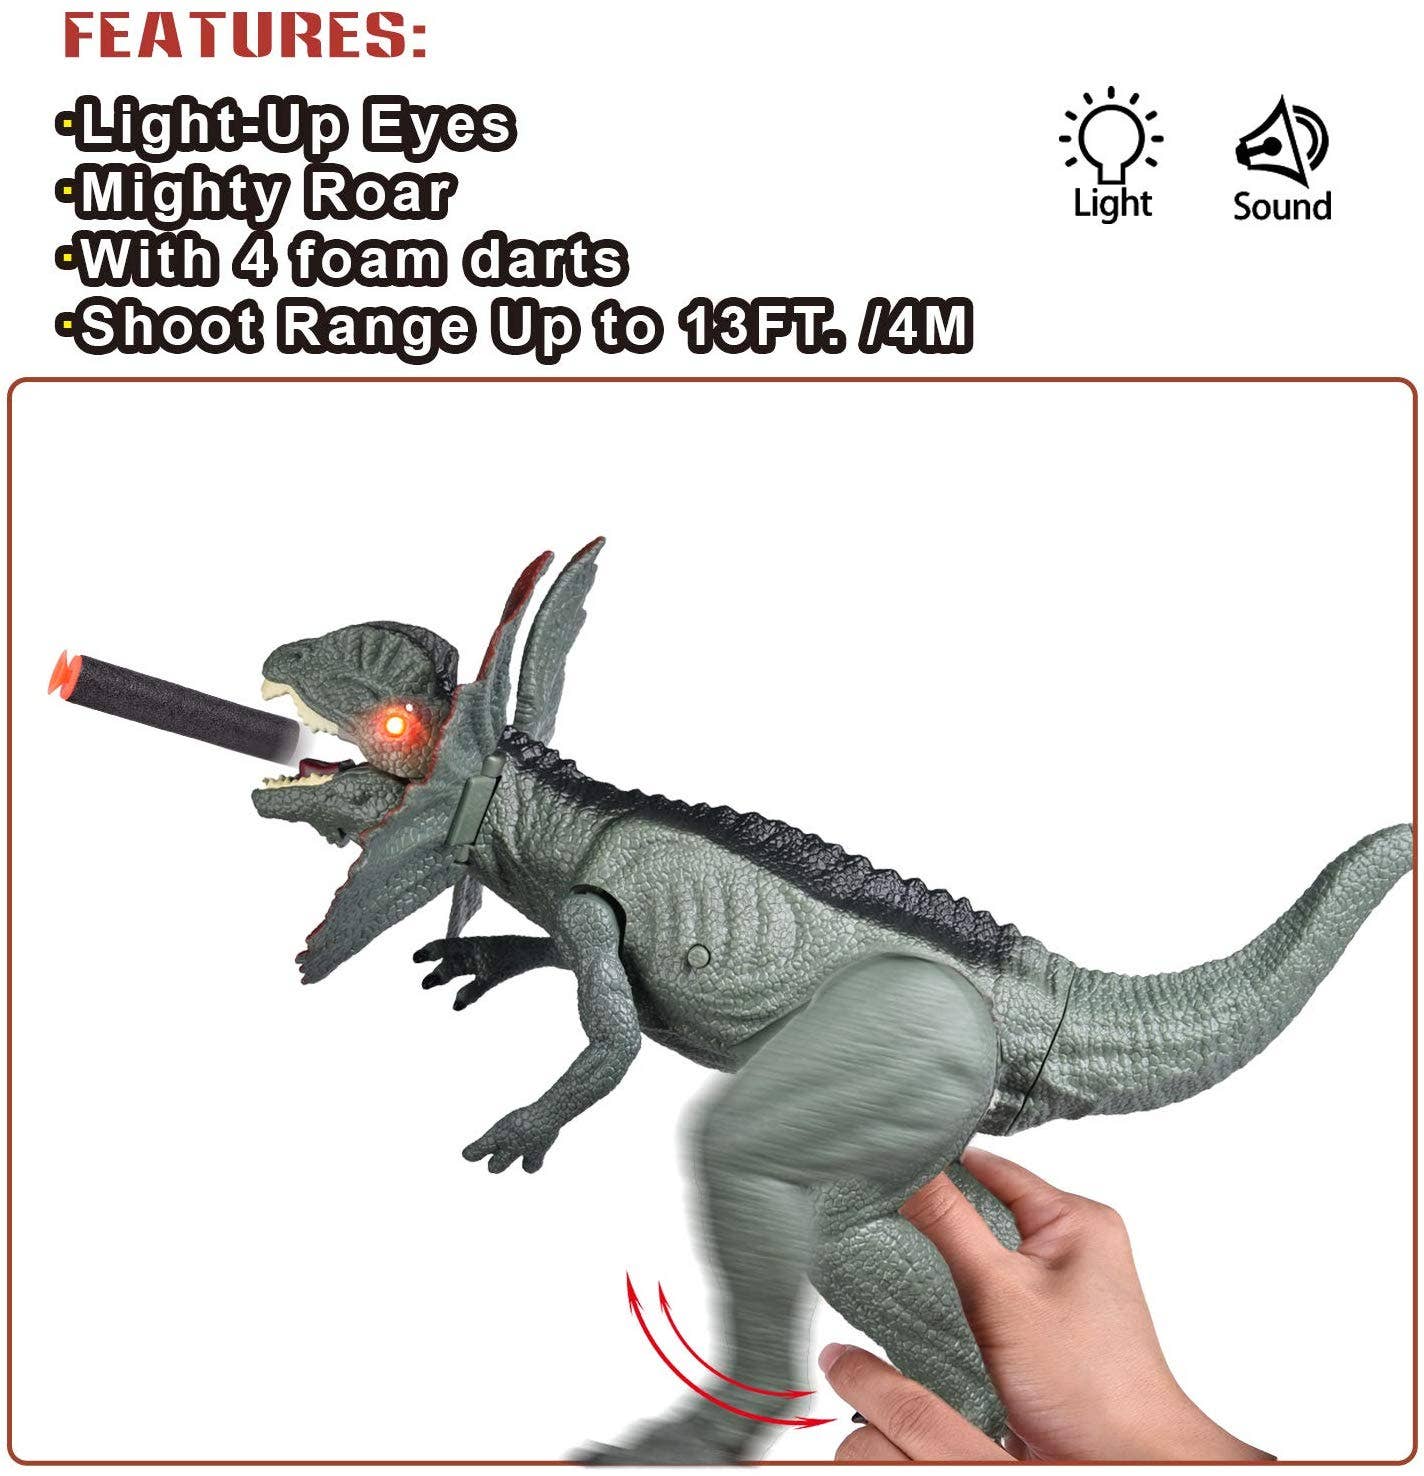 Dart Dilophosaurus